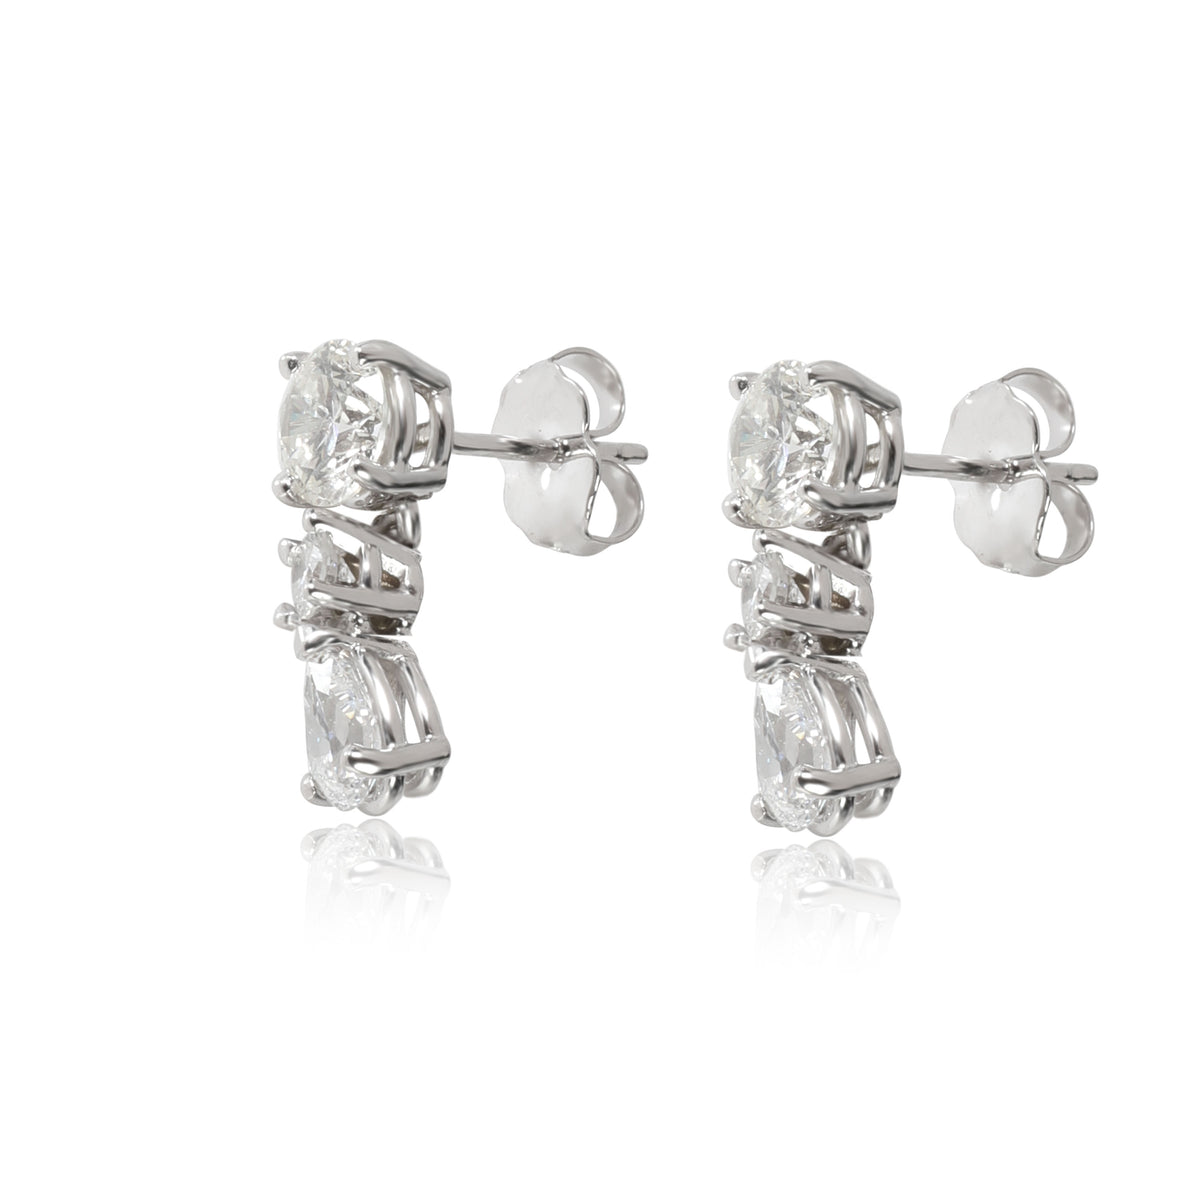 Diamond Multi Shape Drop Earrings in 14kt White Gold 1 5/8 CTW